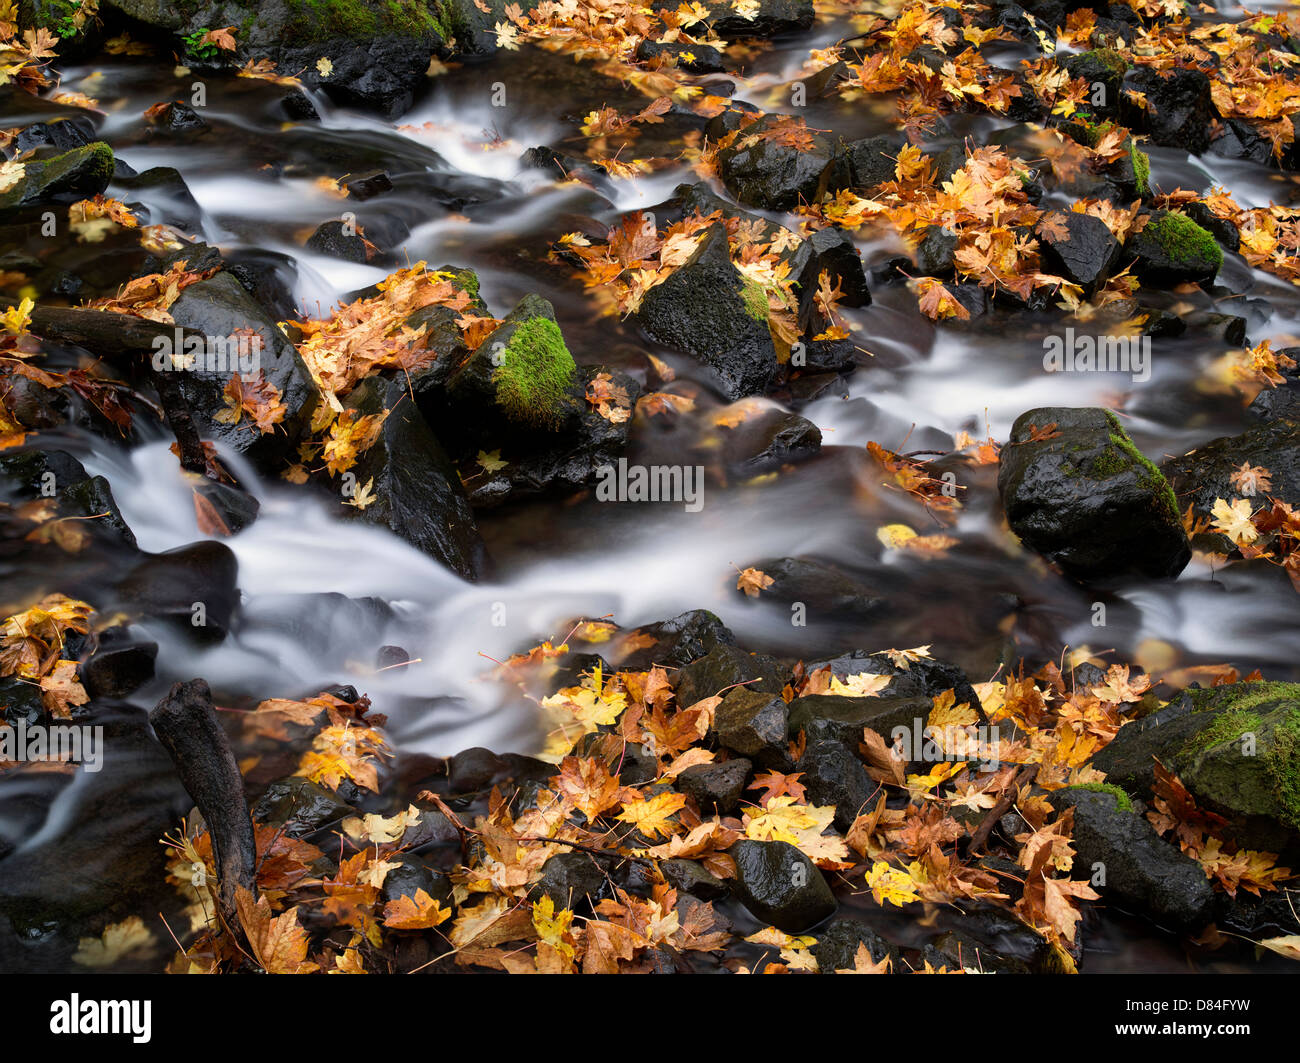 La famine Creek et à l'automne feuilles d'érable Feuilles couleur grand. Columbia River Gorge National Scenic Area, New York Banque D'Images